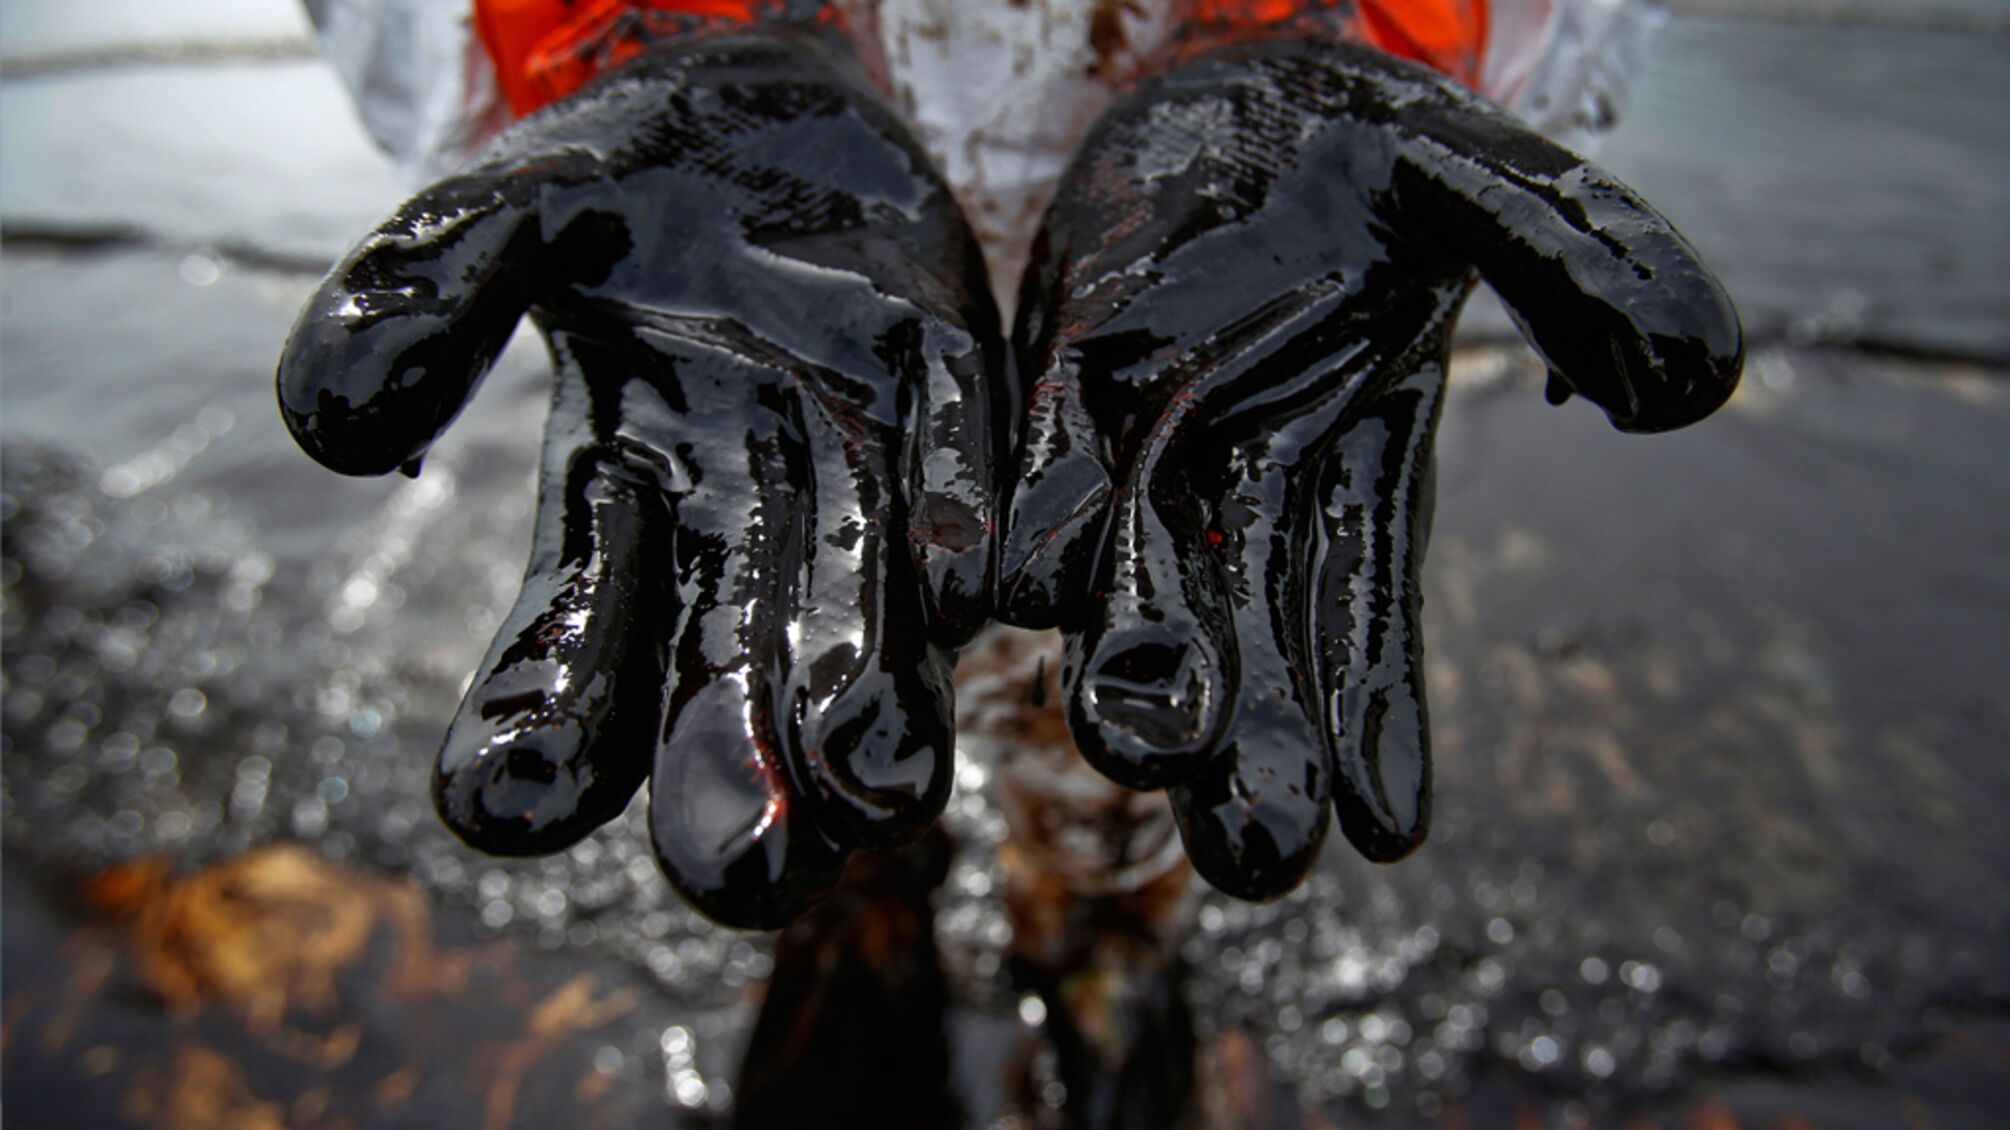 Екологічне лихо: вода в Дністрі забруднена нафтою, норма перевищена у 200 разів  (фото)